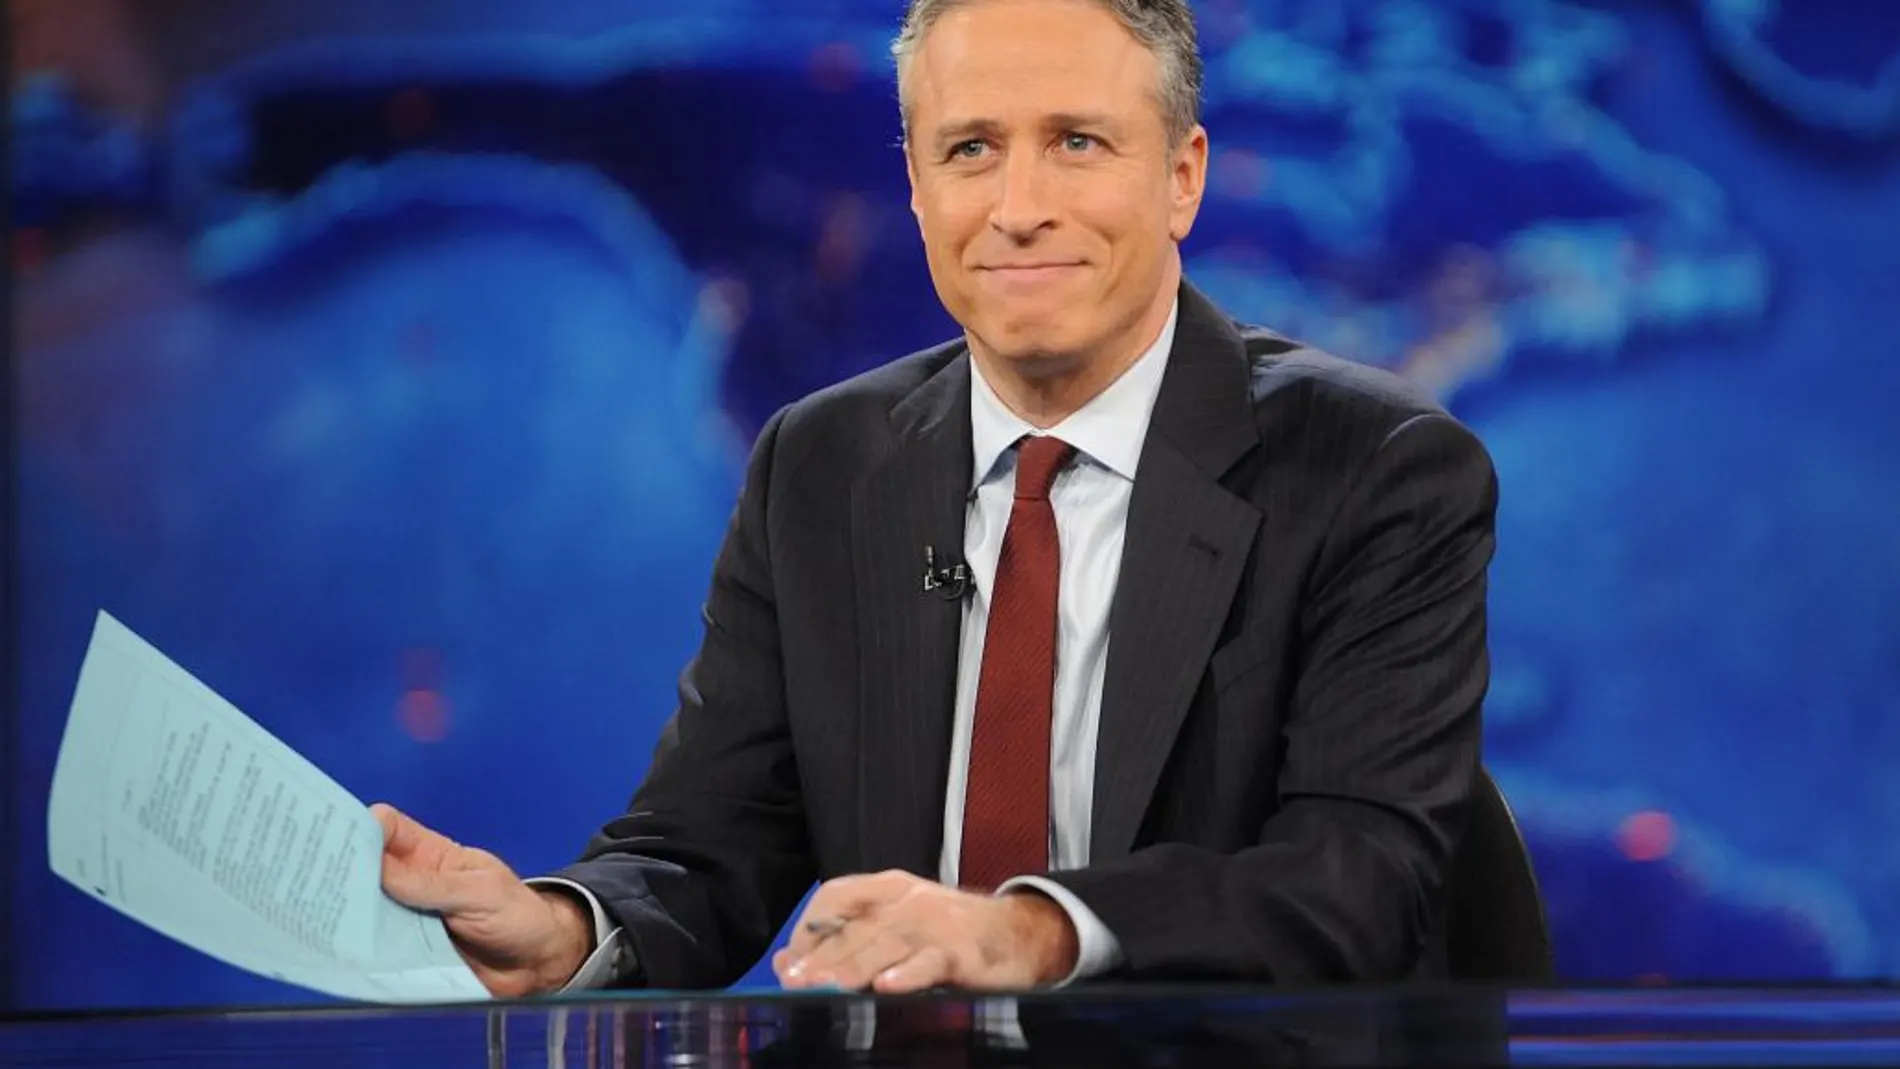 Jon Stewart durante la emisión del programa "The Daily Show with Jon Stewart"en 2011